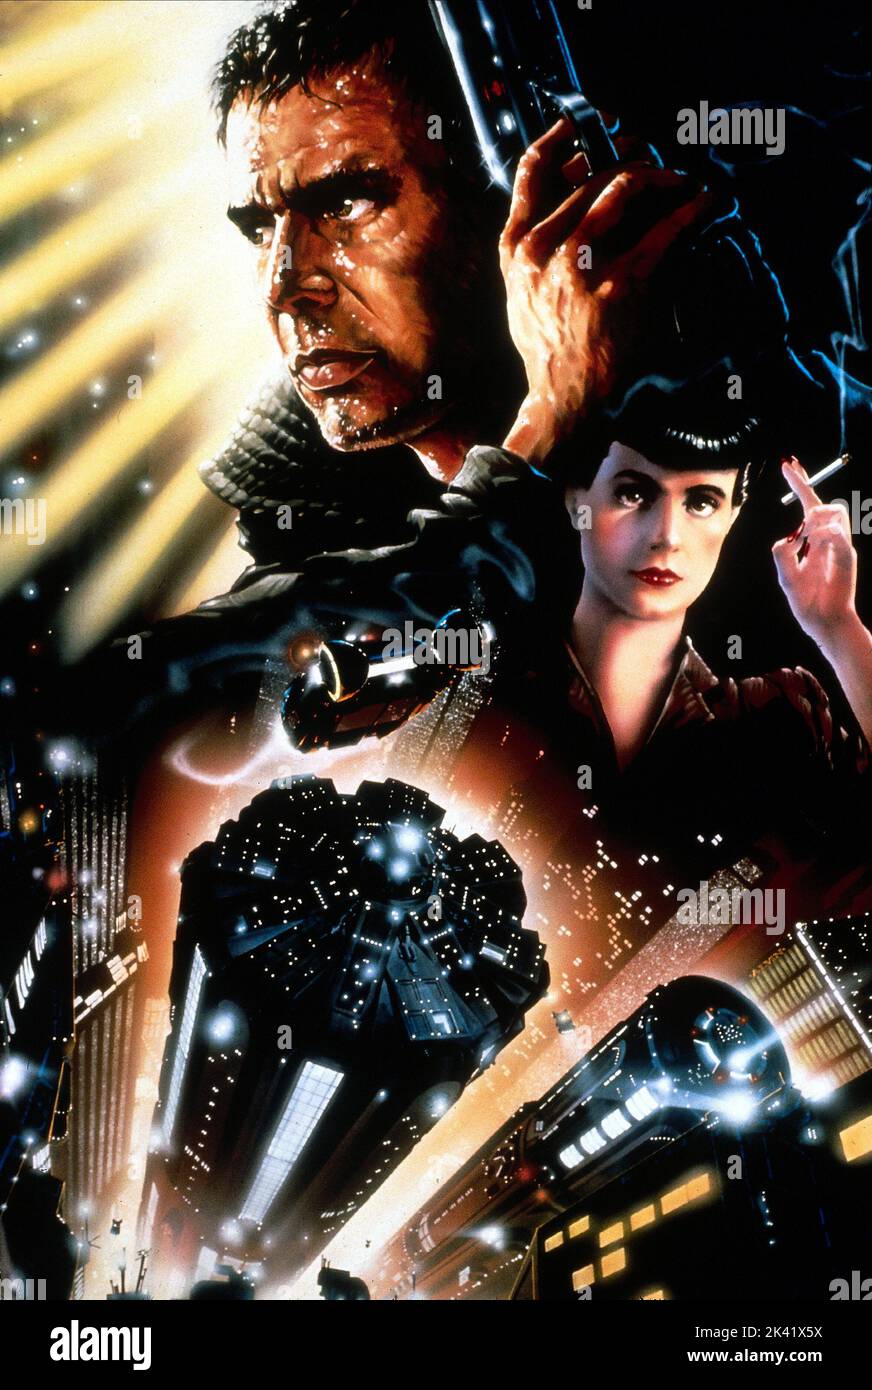 Blade Runner 1982. Blade Runner Movie Poster. Stock Photo